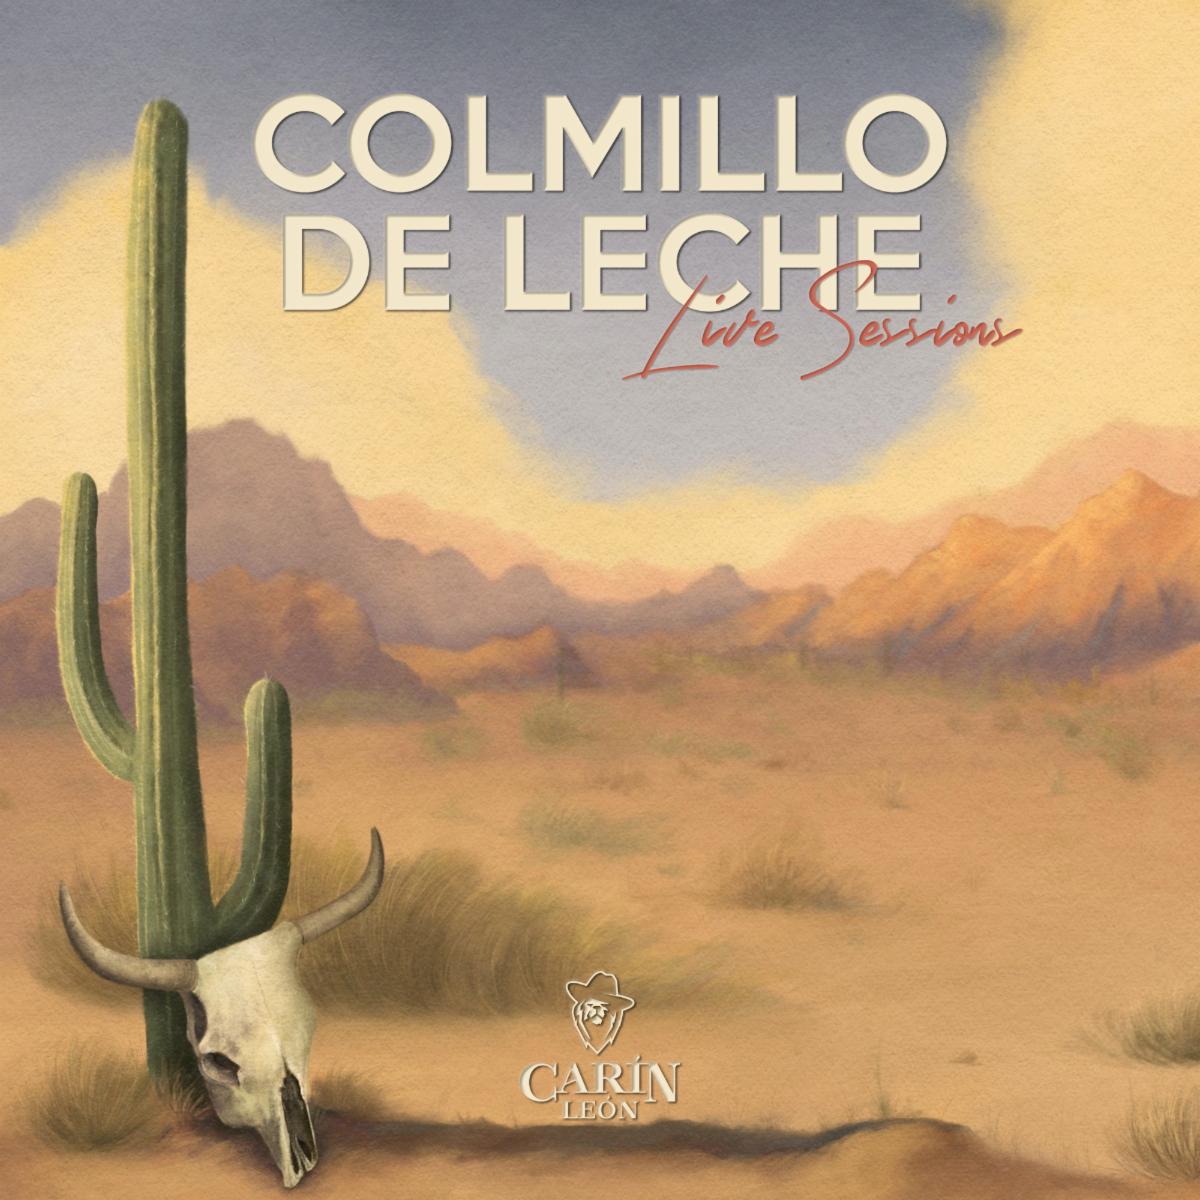 CARIN LEÓN revela su nuevo ‘Live Session’ del álbum “Colmillo de Leche”